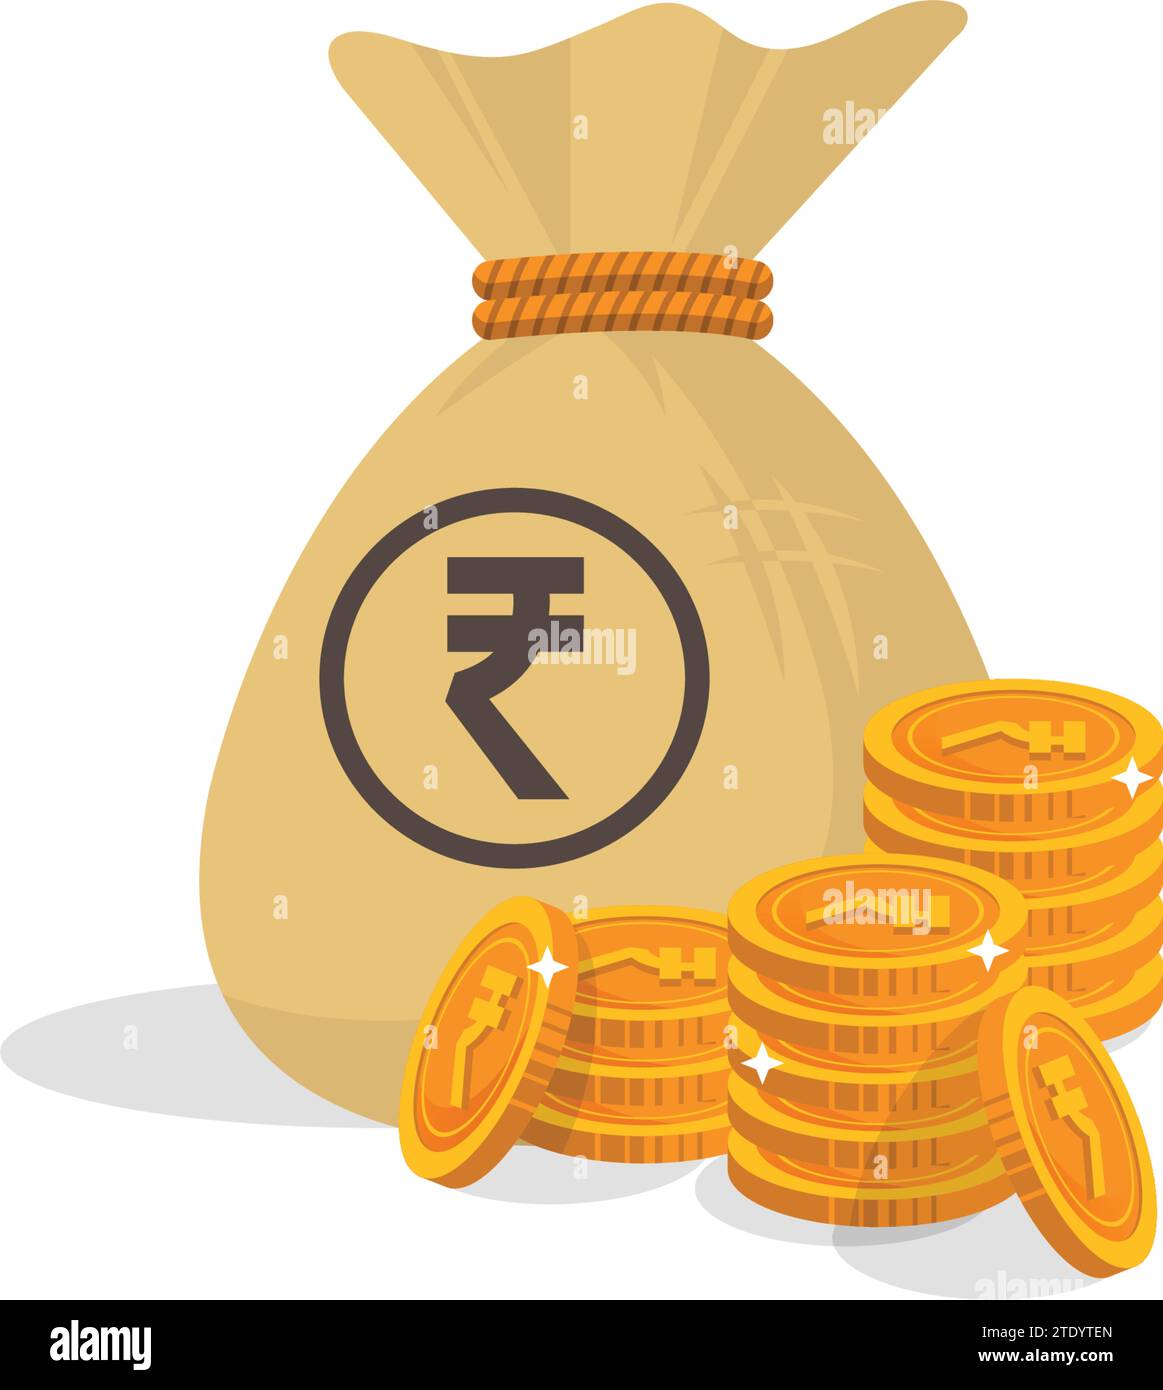 Rupiensymbol Indisches Währungssymbol Münze Geld Bank Vektor Stock Vektor